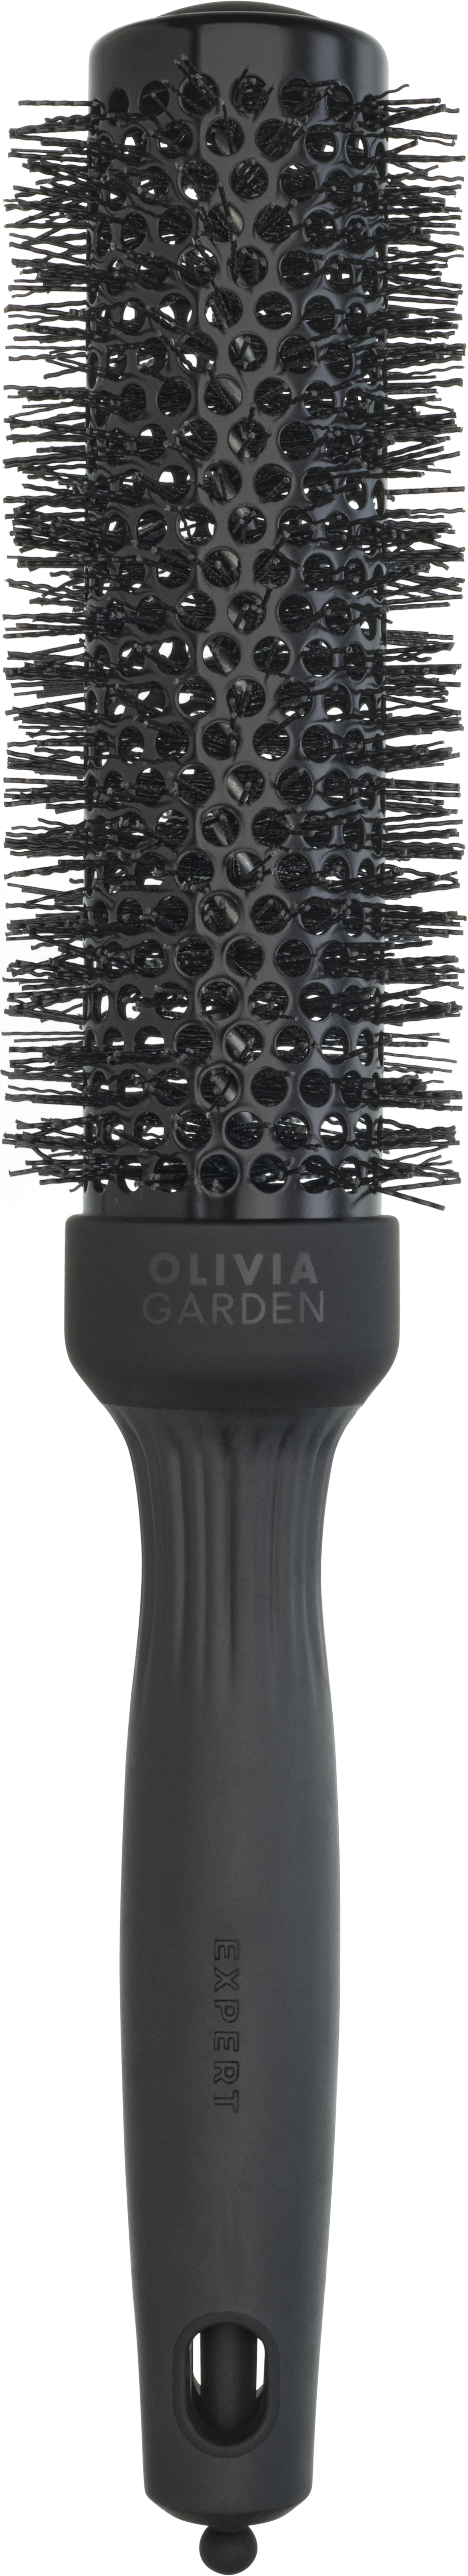 Olivia Garden Expert Blowout Speed Wavy Bristles Black Label 35